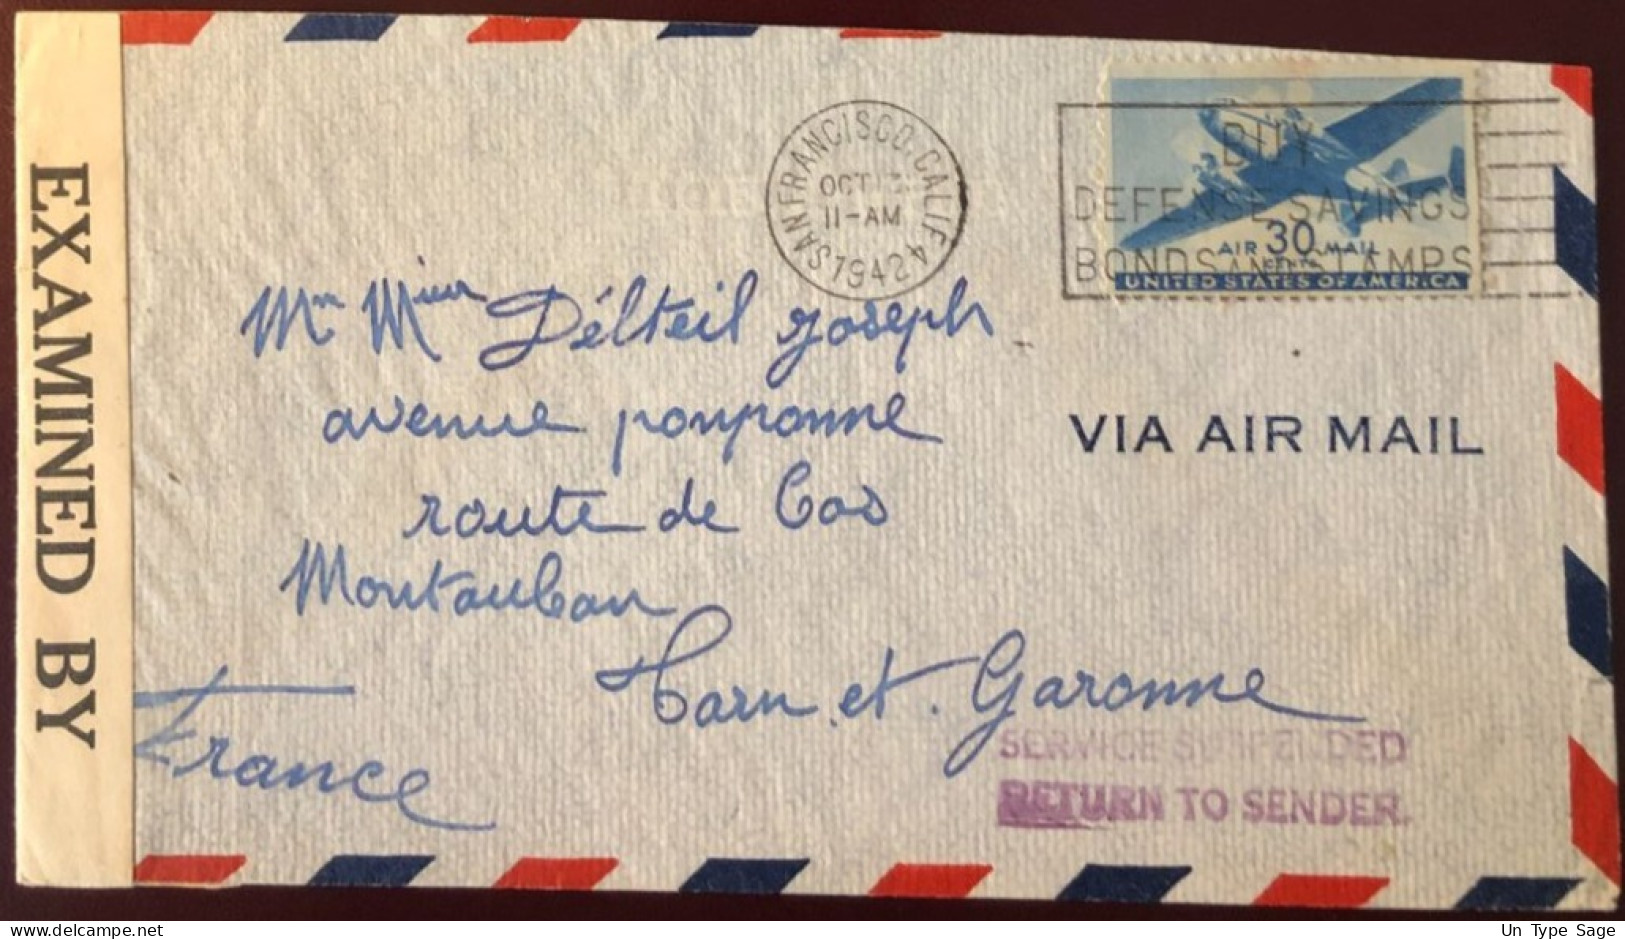 Etats-Unis, Griffe SERVICE SUSPENDED / RETURN TO SENDER Sur Enveloppe Censurée Pour La France 1942 - (B1347) - Marcophilie